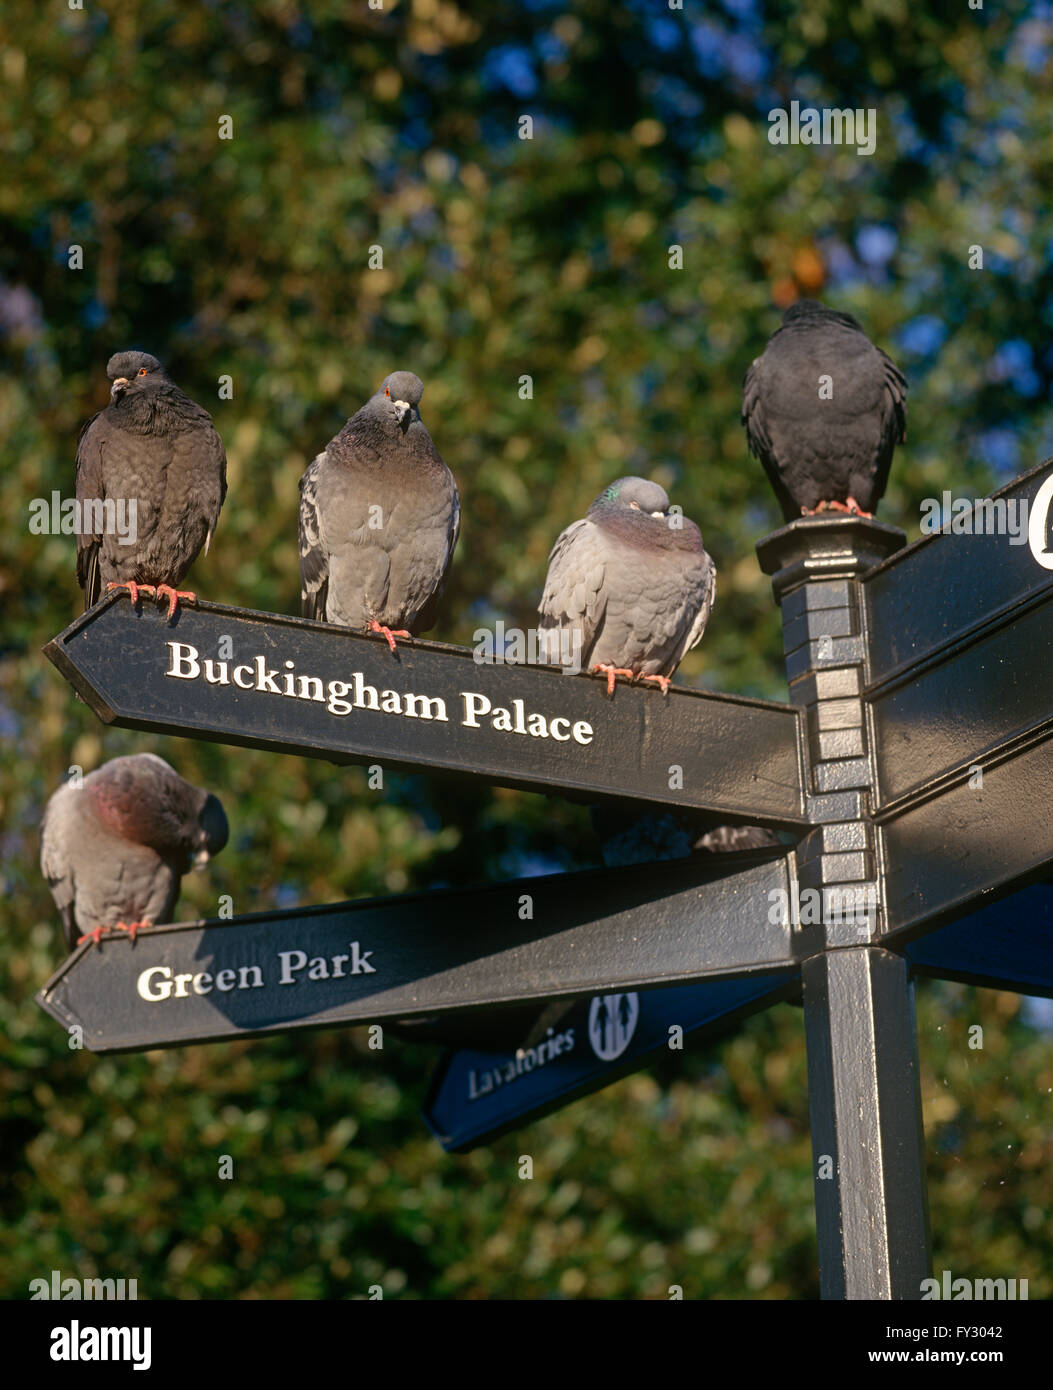 Tauben sitzen auf einem Schild für Buckingham Palace und Green Park. Stockfoto